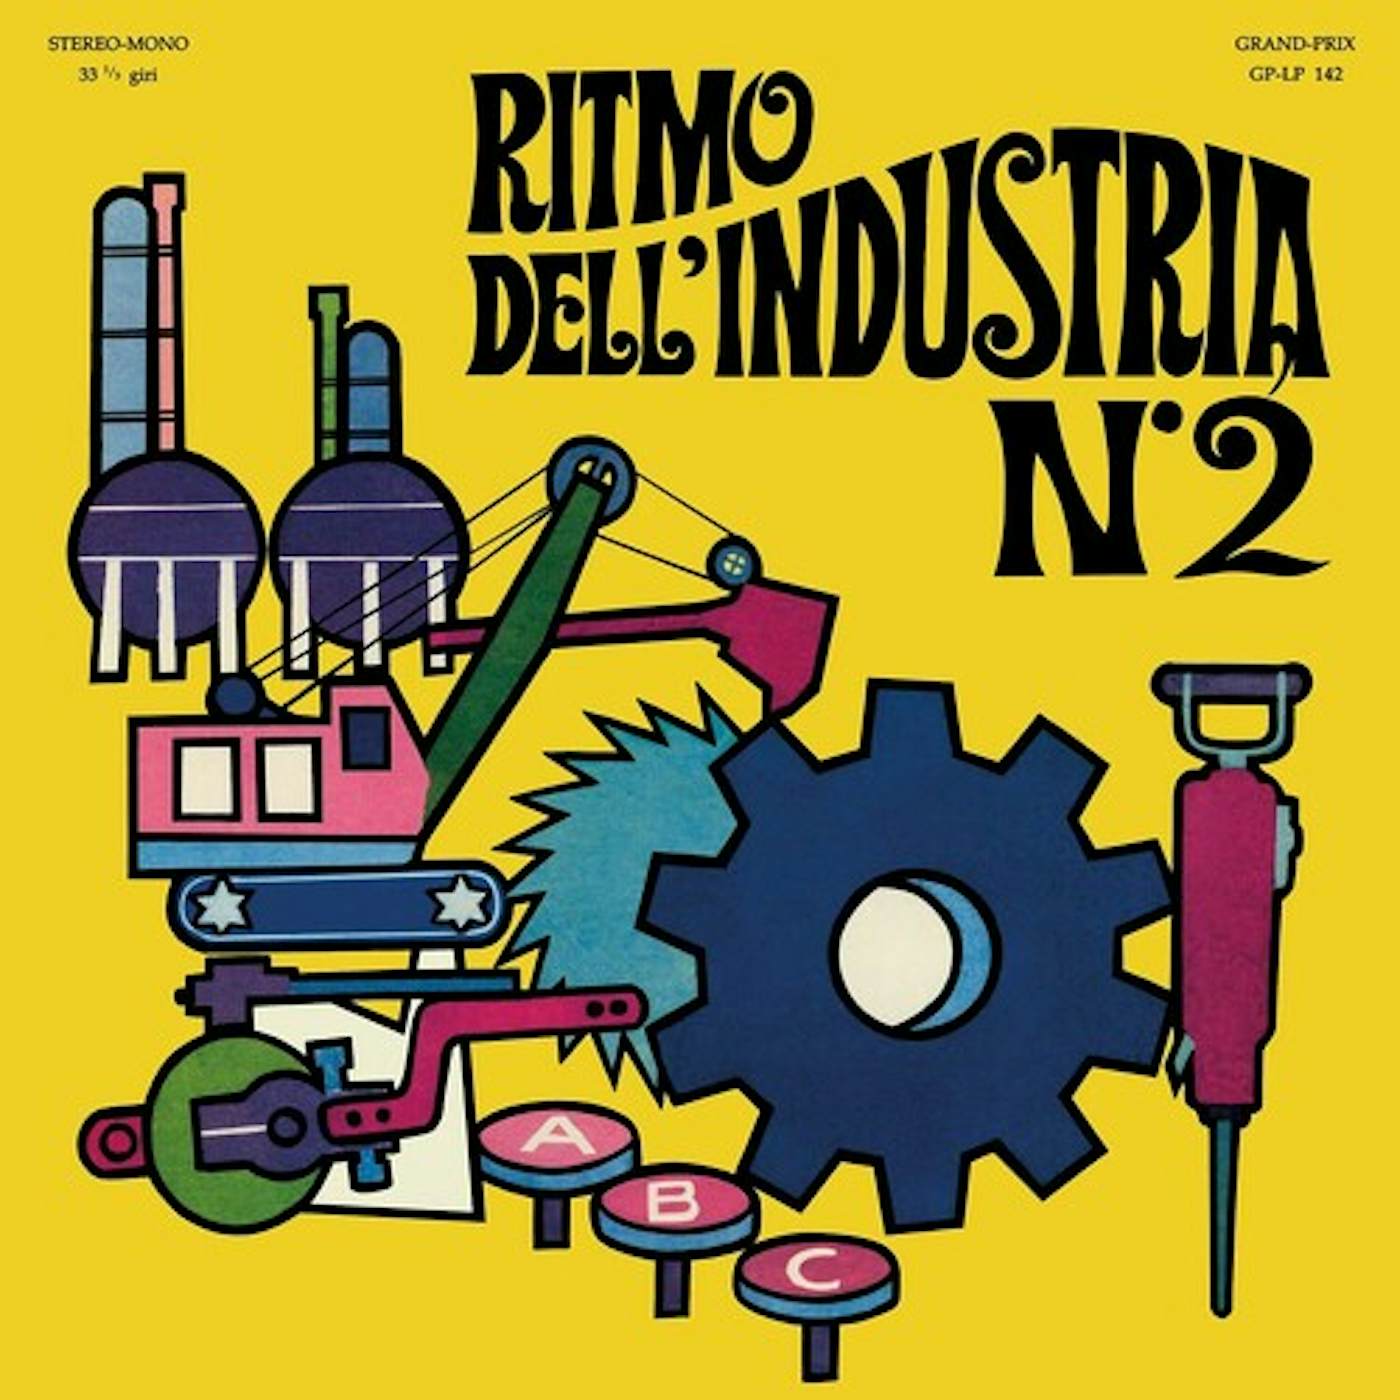 Alessandro Alessandroni RITMO DELL'INDUSTRIA N. 2 Vinyl Record